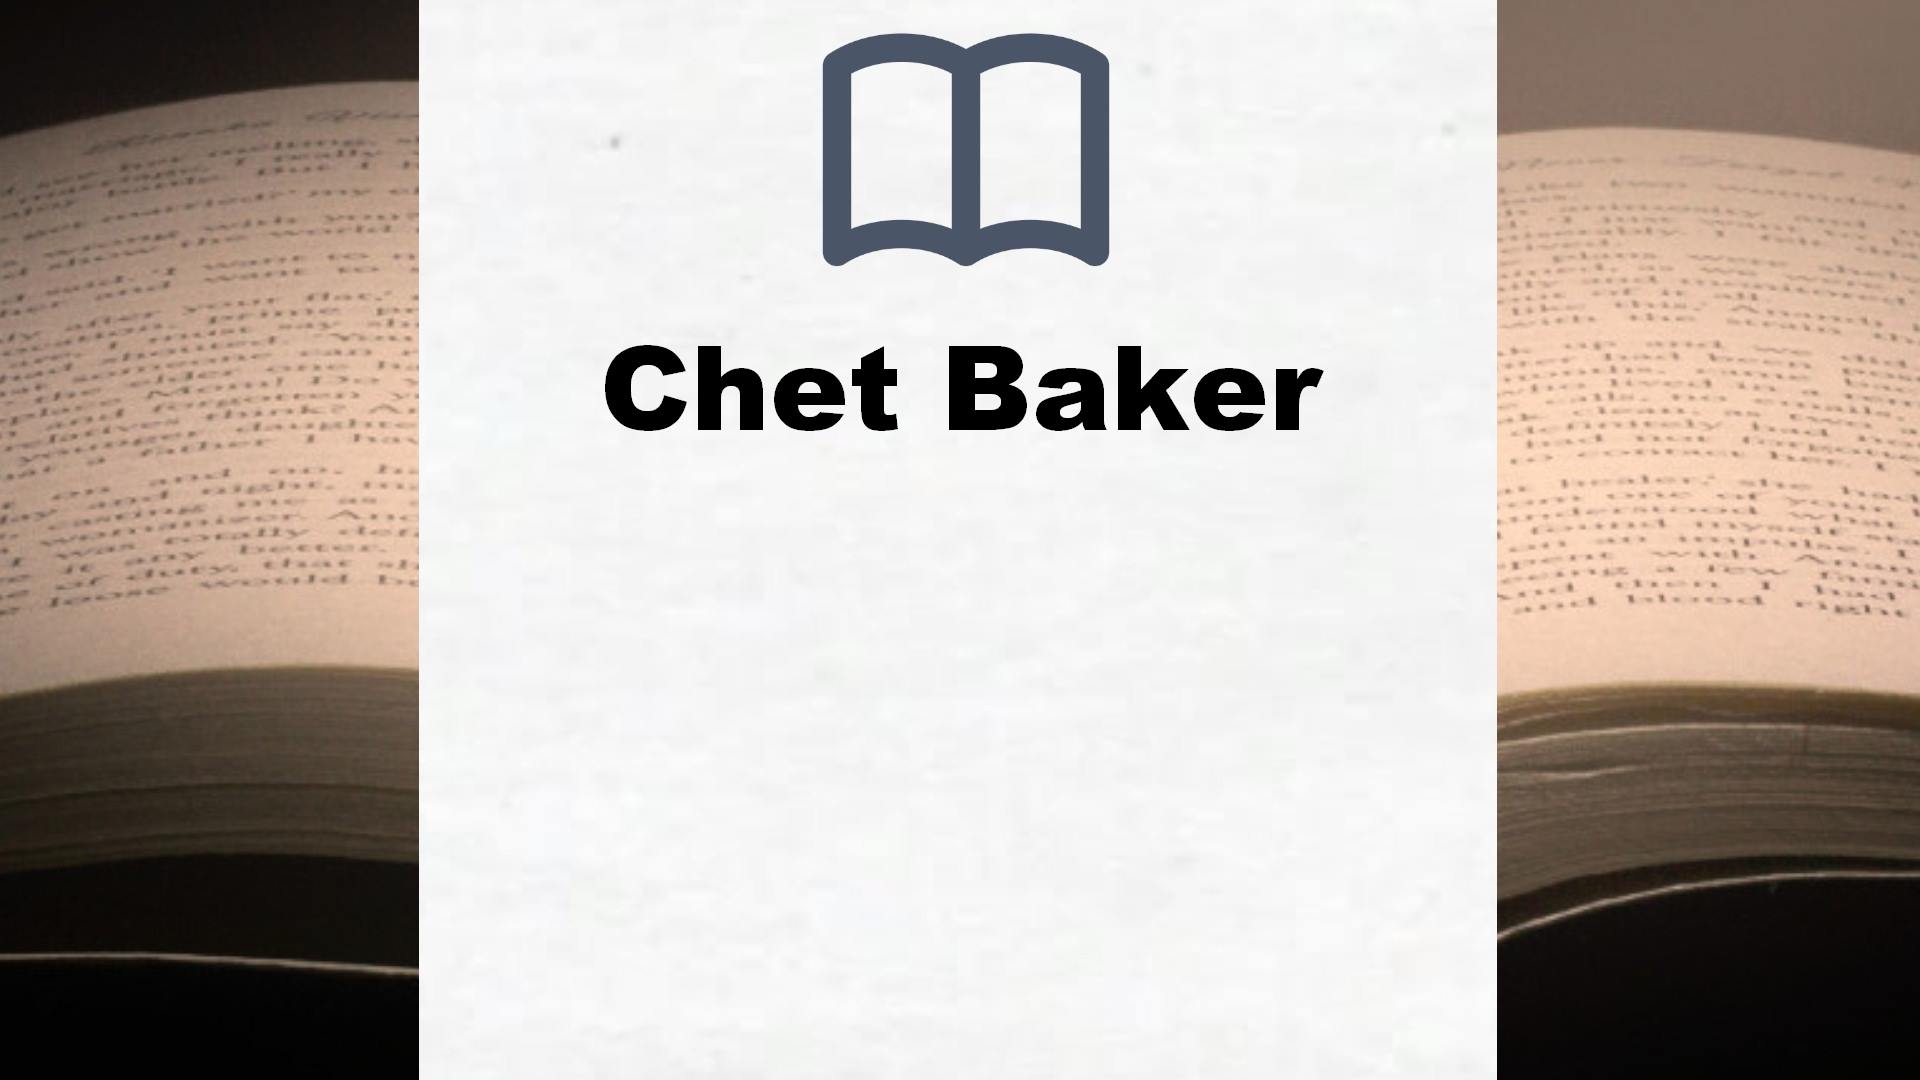 Bücher über Chet Baker